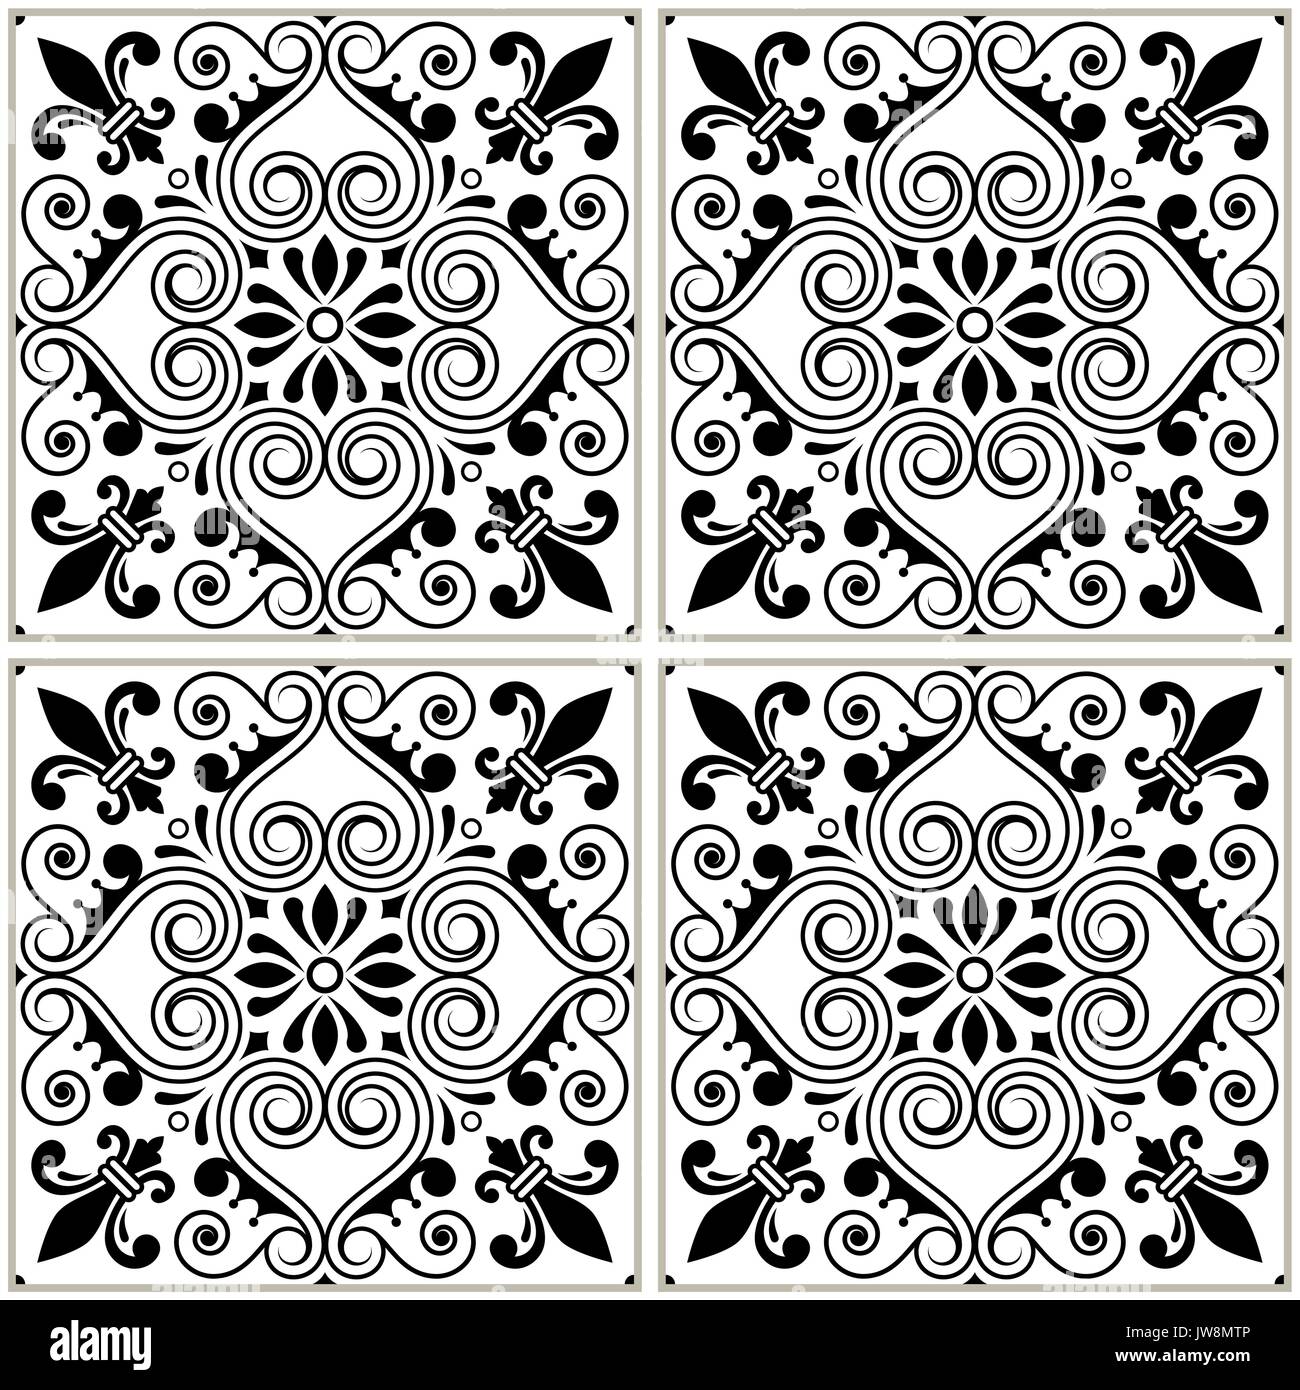 Motif carreaux portugais azulejo - design noir et blanc vectoriel continu, fond bleu, vintage jeu de mosaïques Illustration de Vecteur